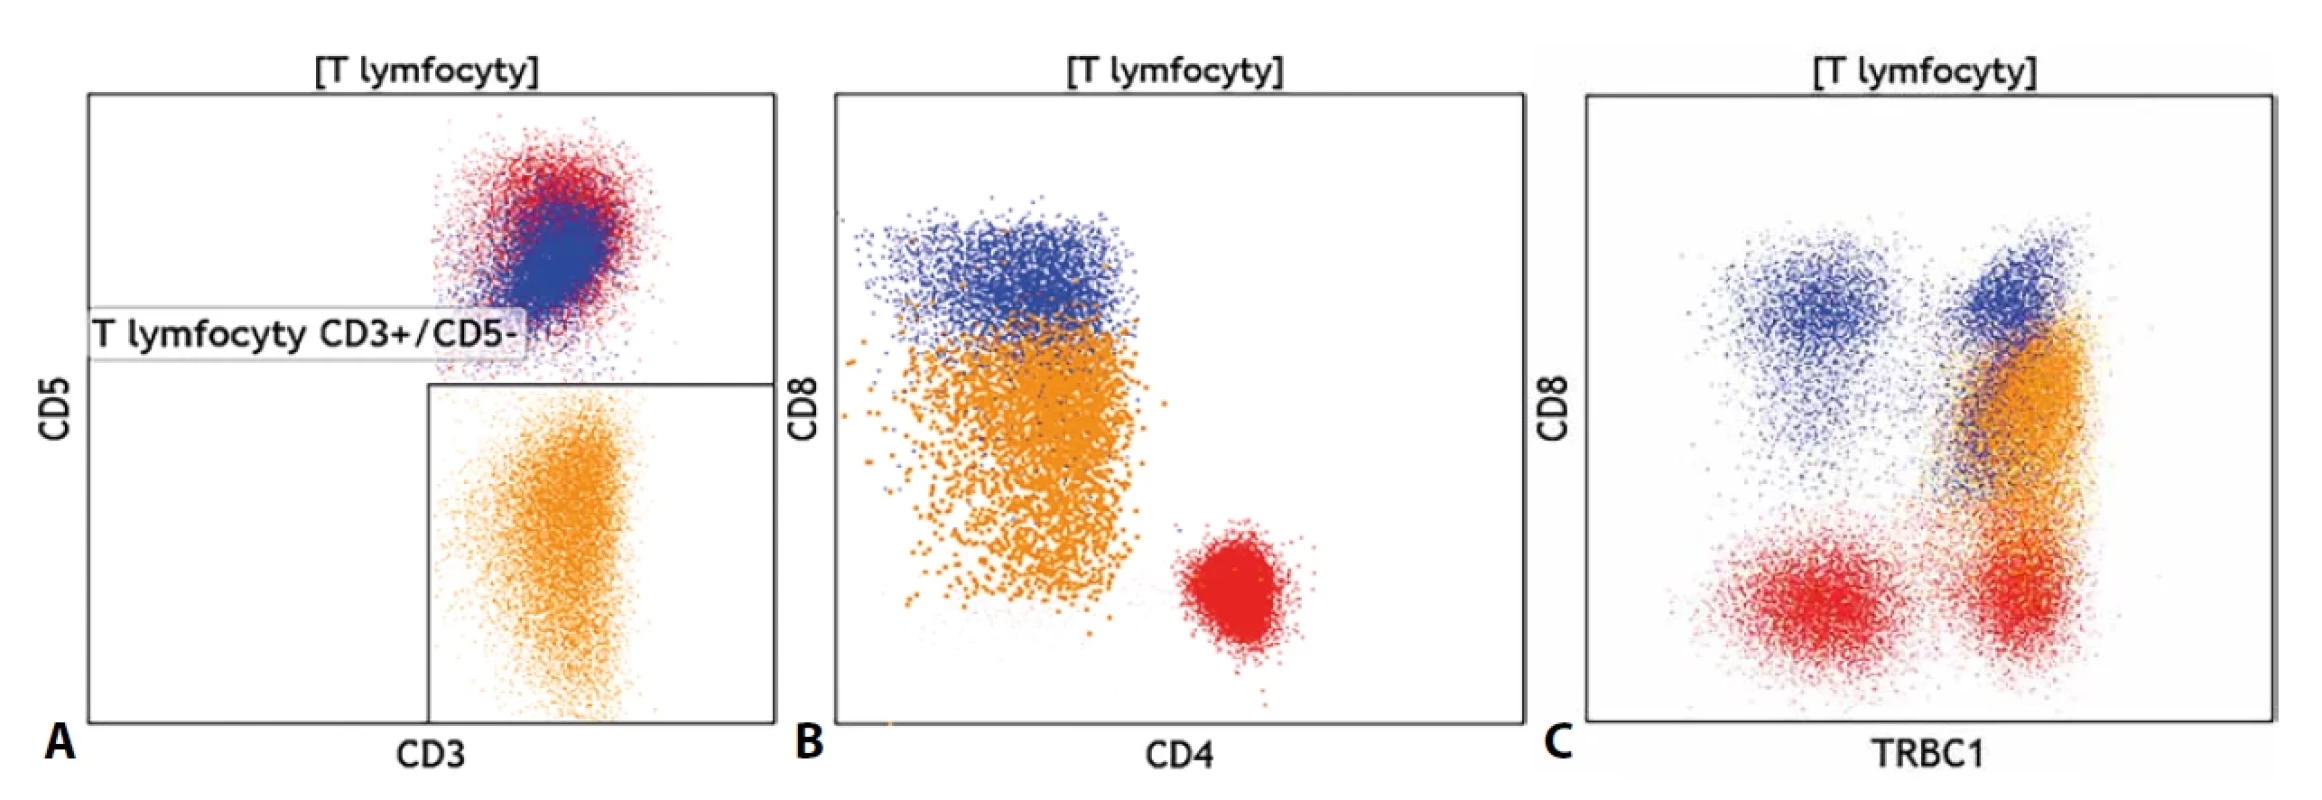 (A) Nález fenotypově atypické klonální populace T lymfocytů se ztrátou exprese znaku CD5 (oranžově), (B) se slabou expresí znaku CD8 a (C) s výlučnou expresí znaku TRBC1 na celé populaci oproti normální distribuci tohoto znaku na fenotypově normálních CD4+ pomocných T lymfocytech (červeně) a CD8+ cytotoxických T lymfocytech (modře).